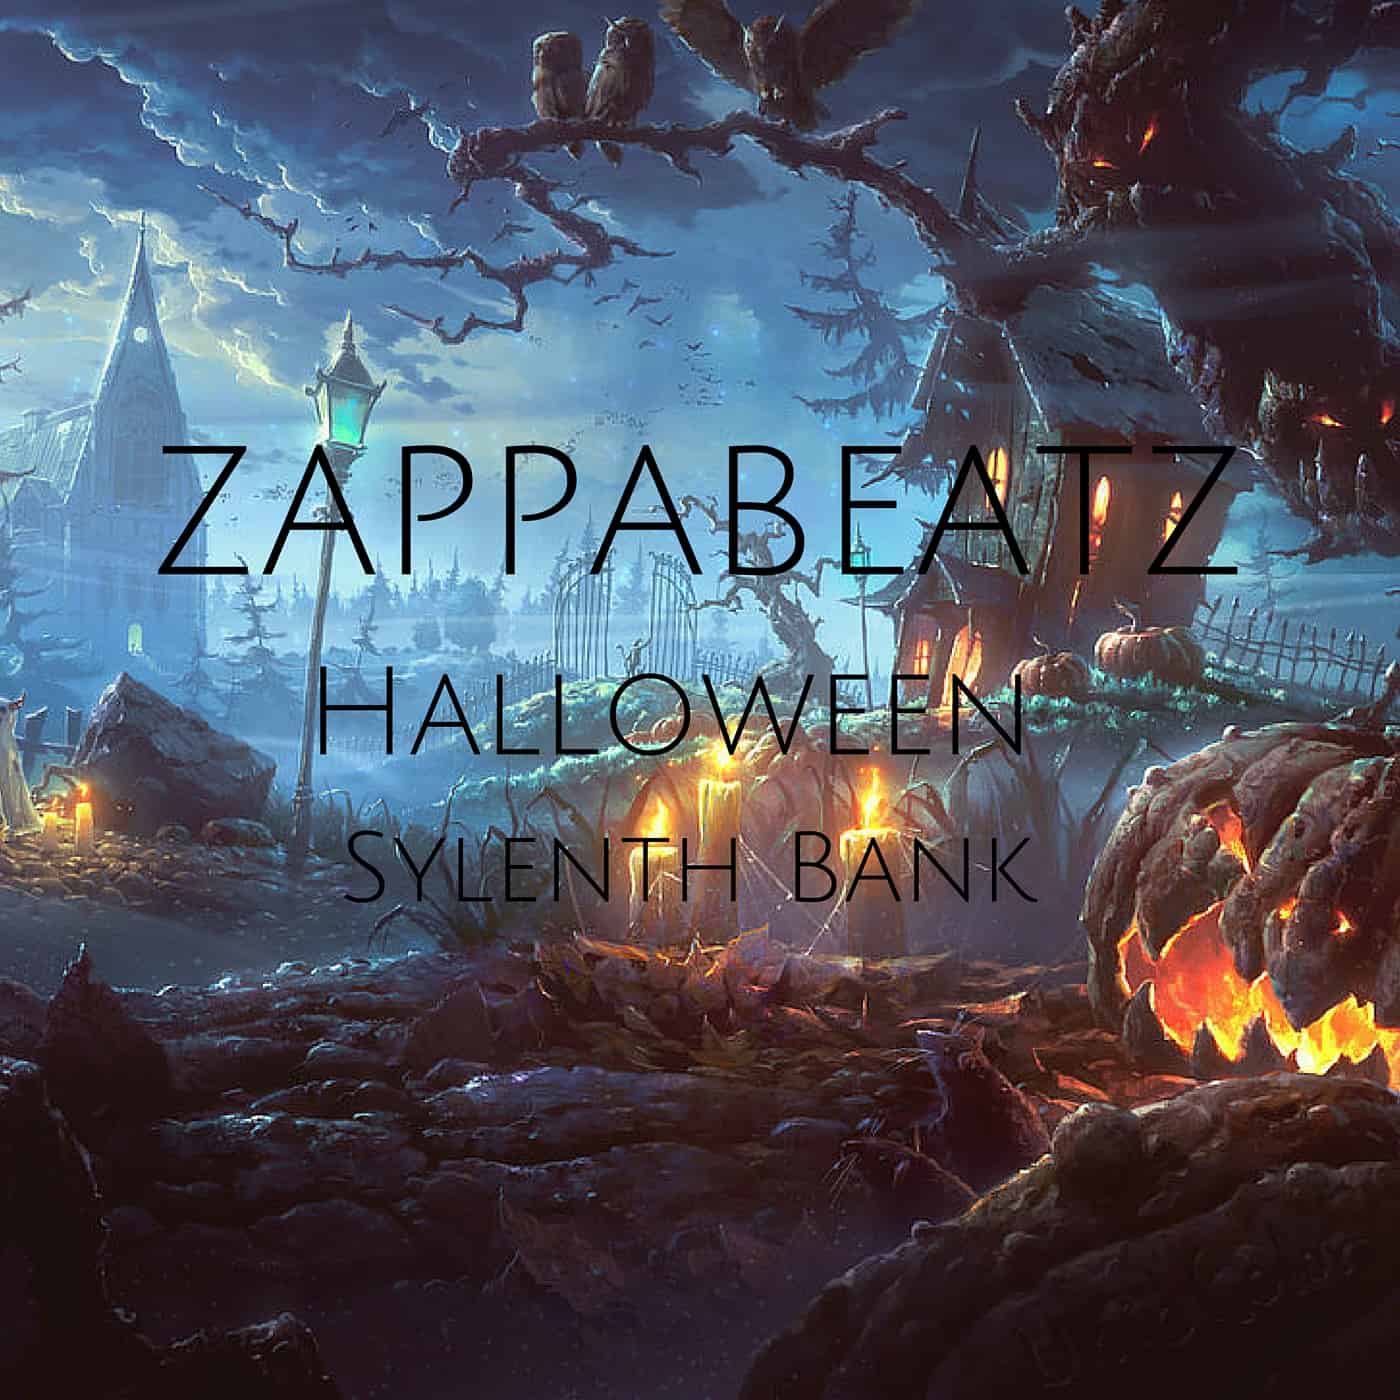 Introducing the Zapapabeatz Sylenth1 Halloween Bank.